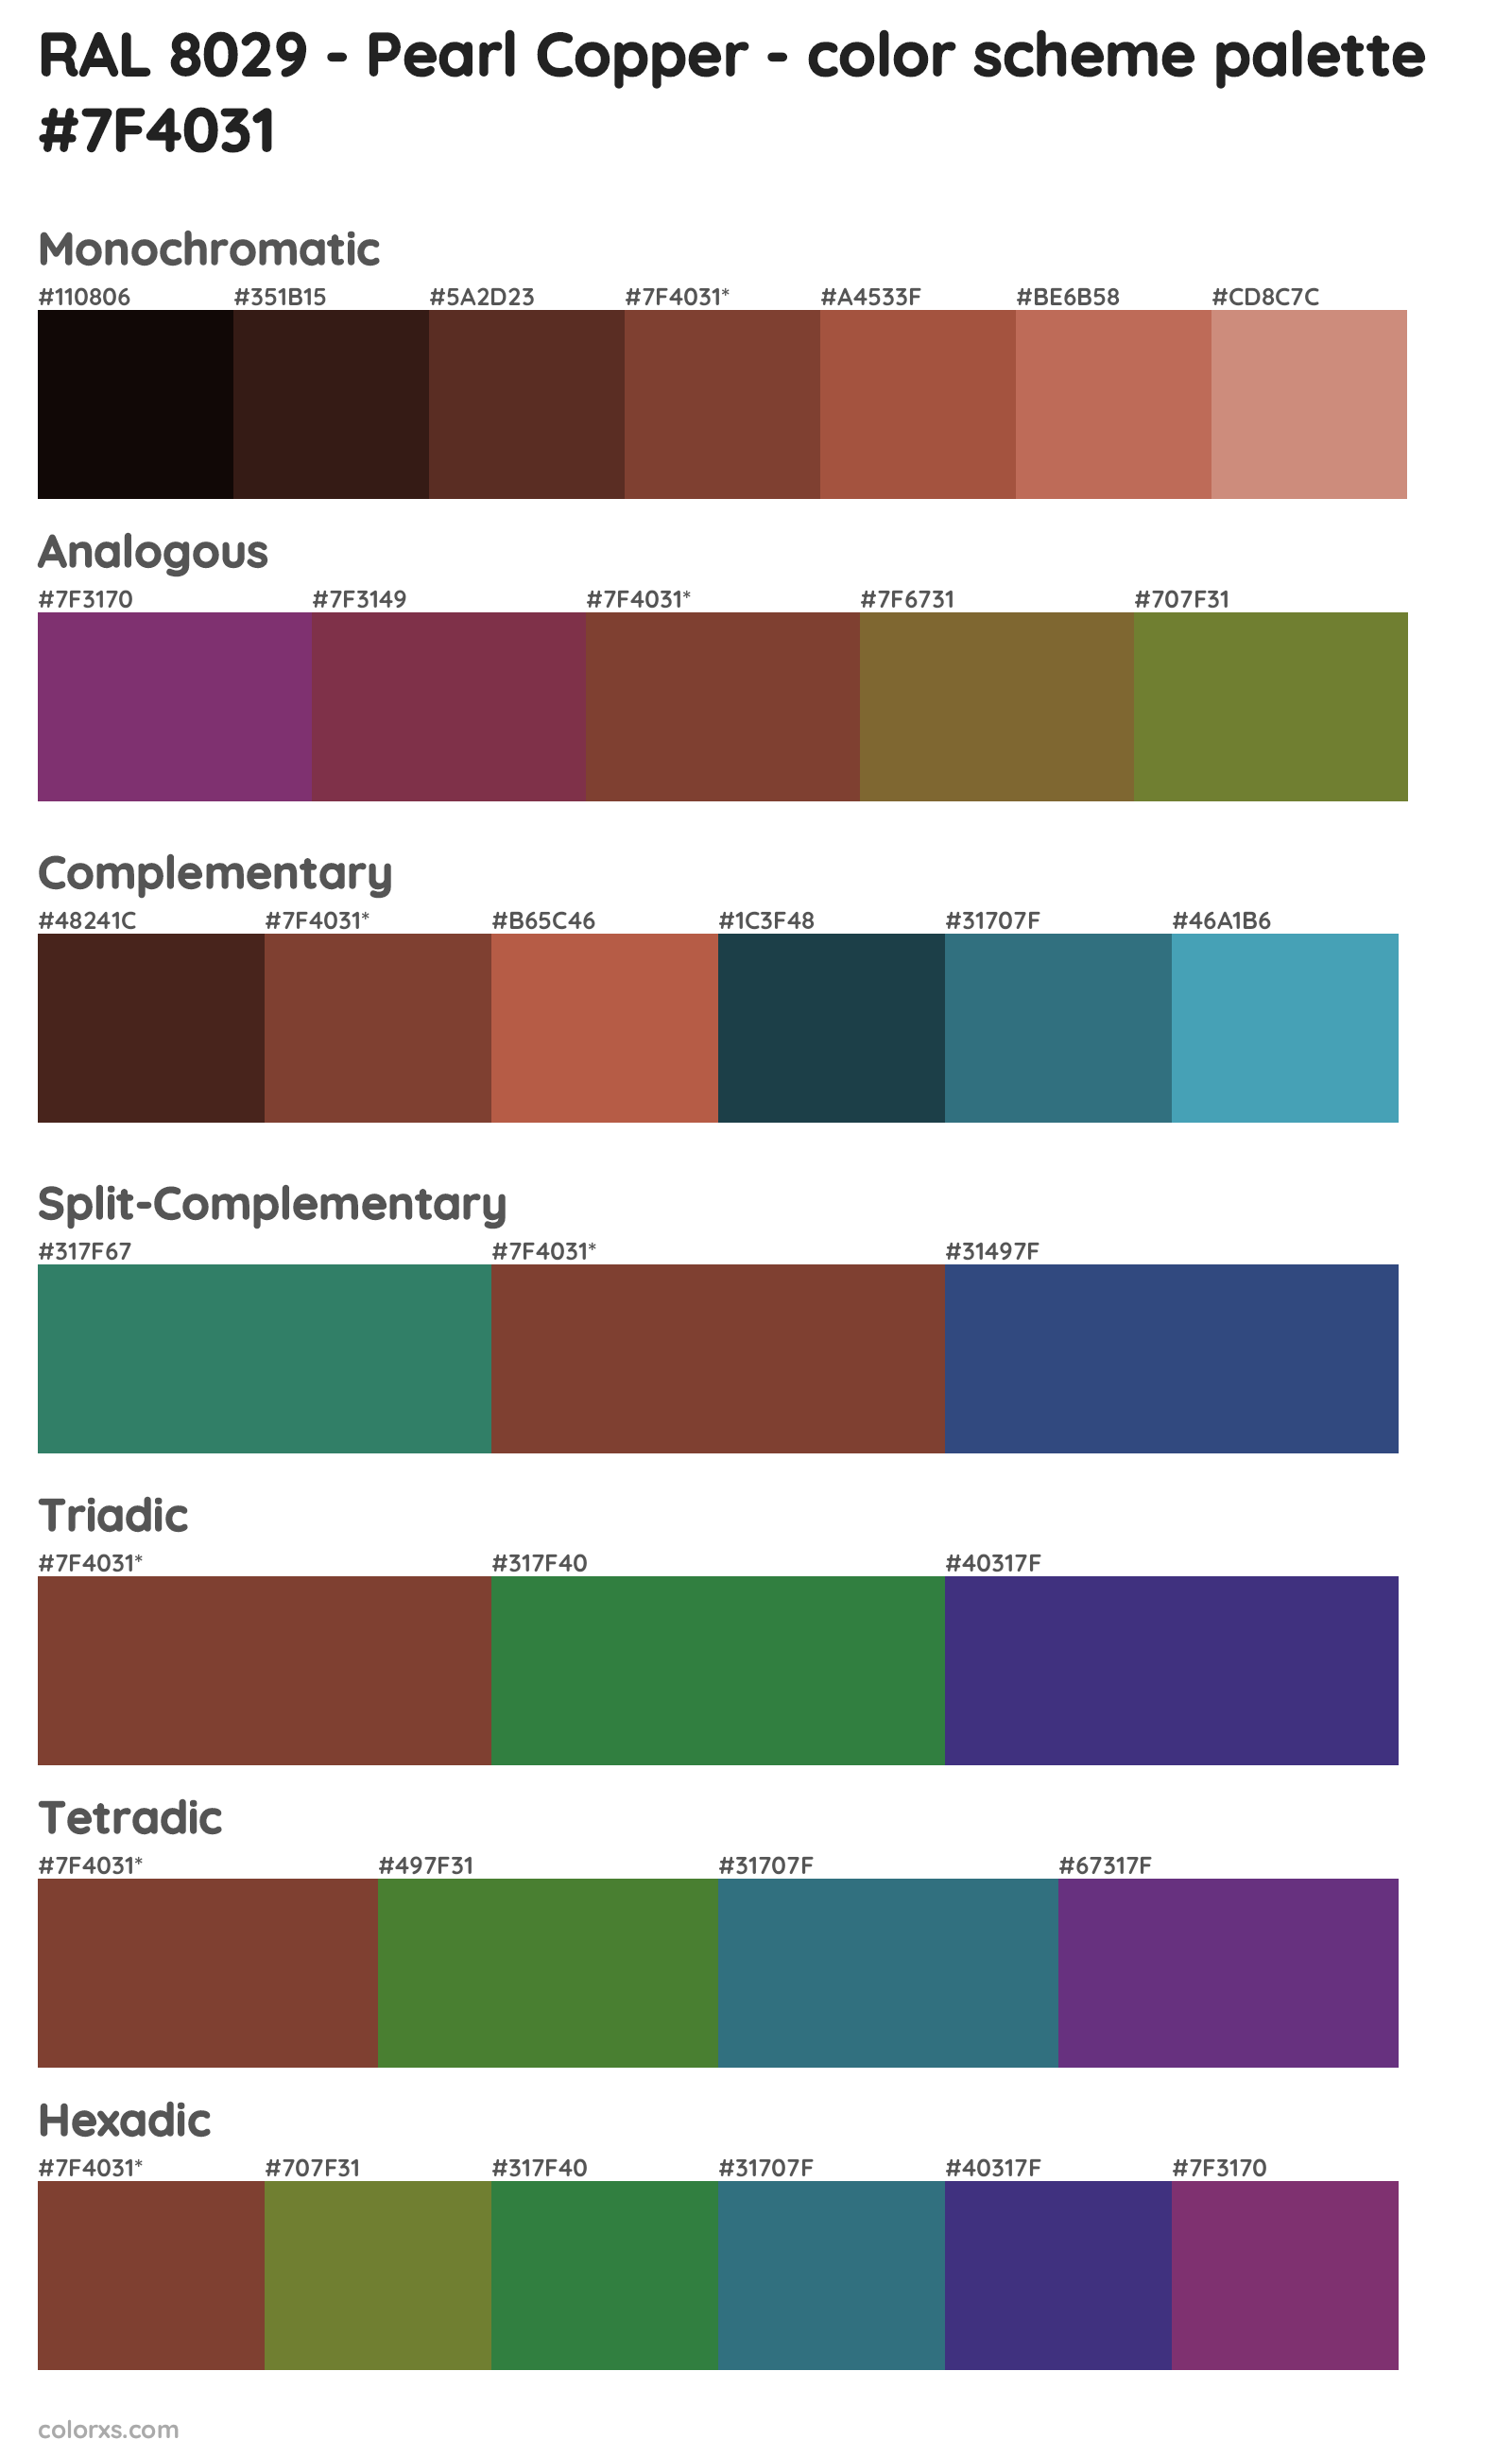 RAL 8029 - Pearl Copper Color Scheme Palettes